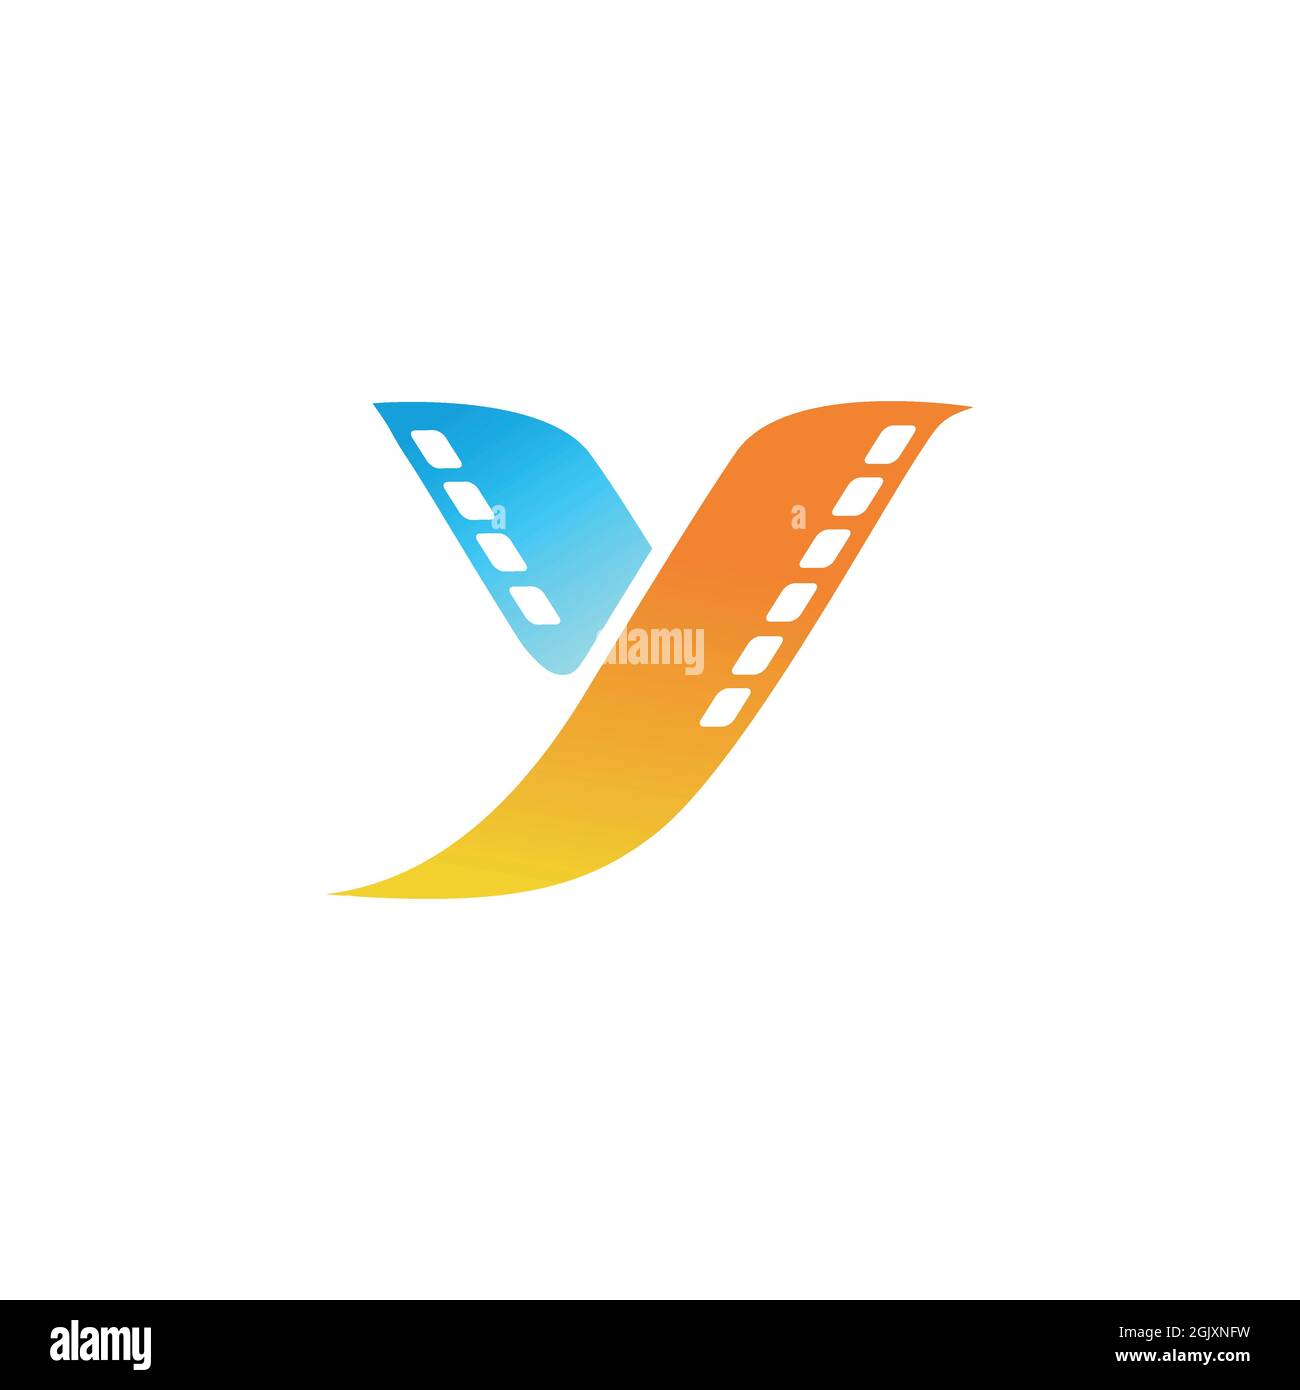 Buchstabe Y abstrakt Vogel fliegen Film Logo Symbol flach Vektor Konzept Grafik einfach stilvolles Design Stock Vektor